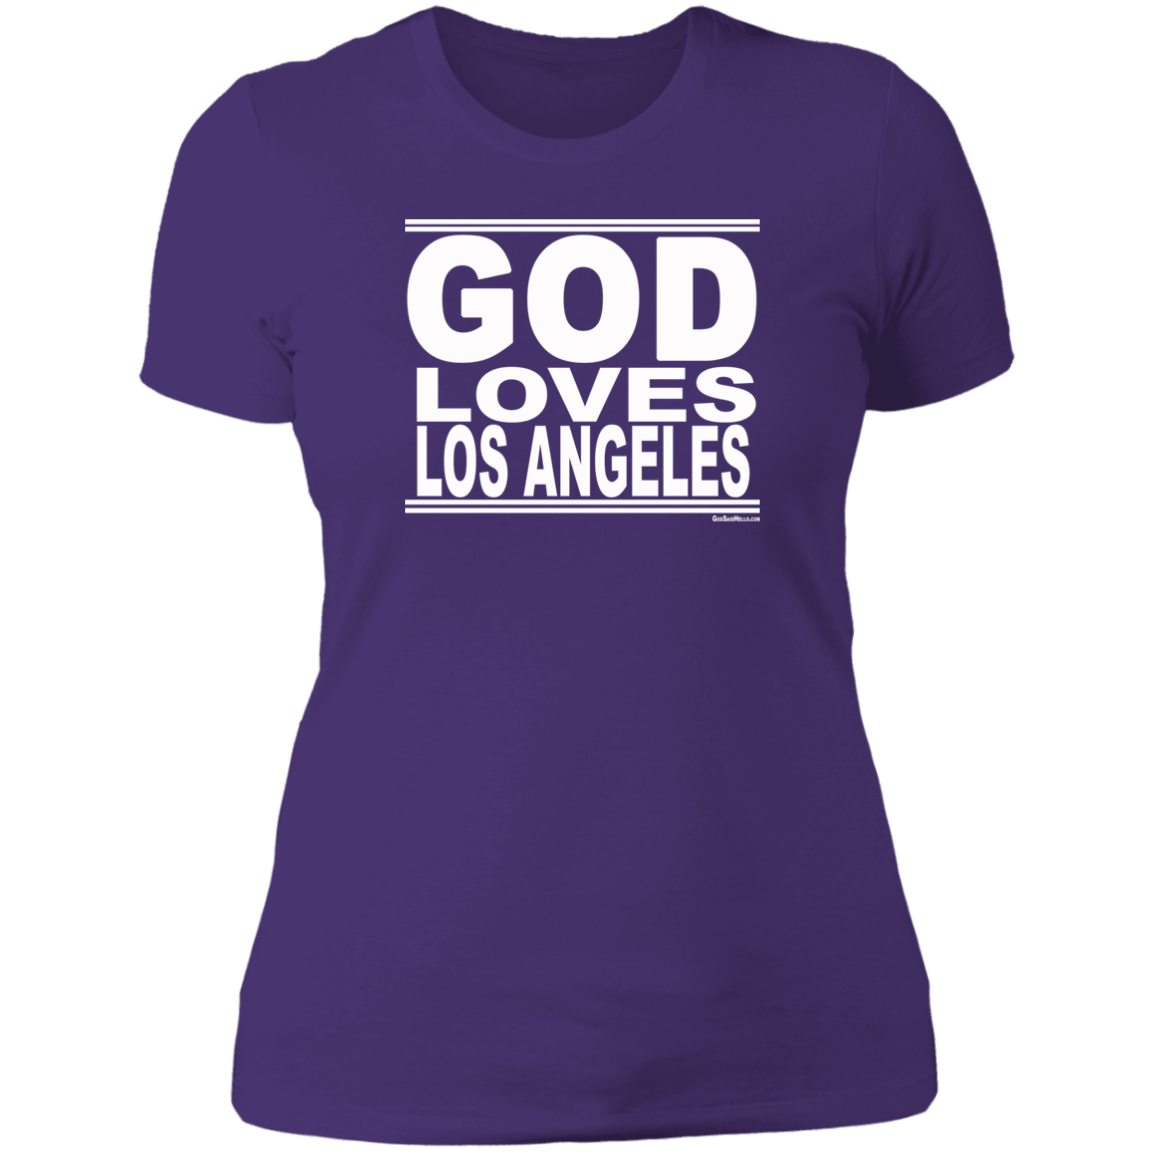 #GodLovesLosAngeles - Women's Shortsleeve Tee